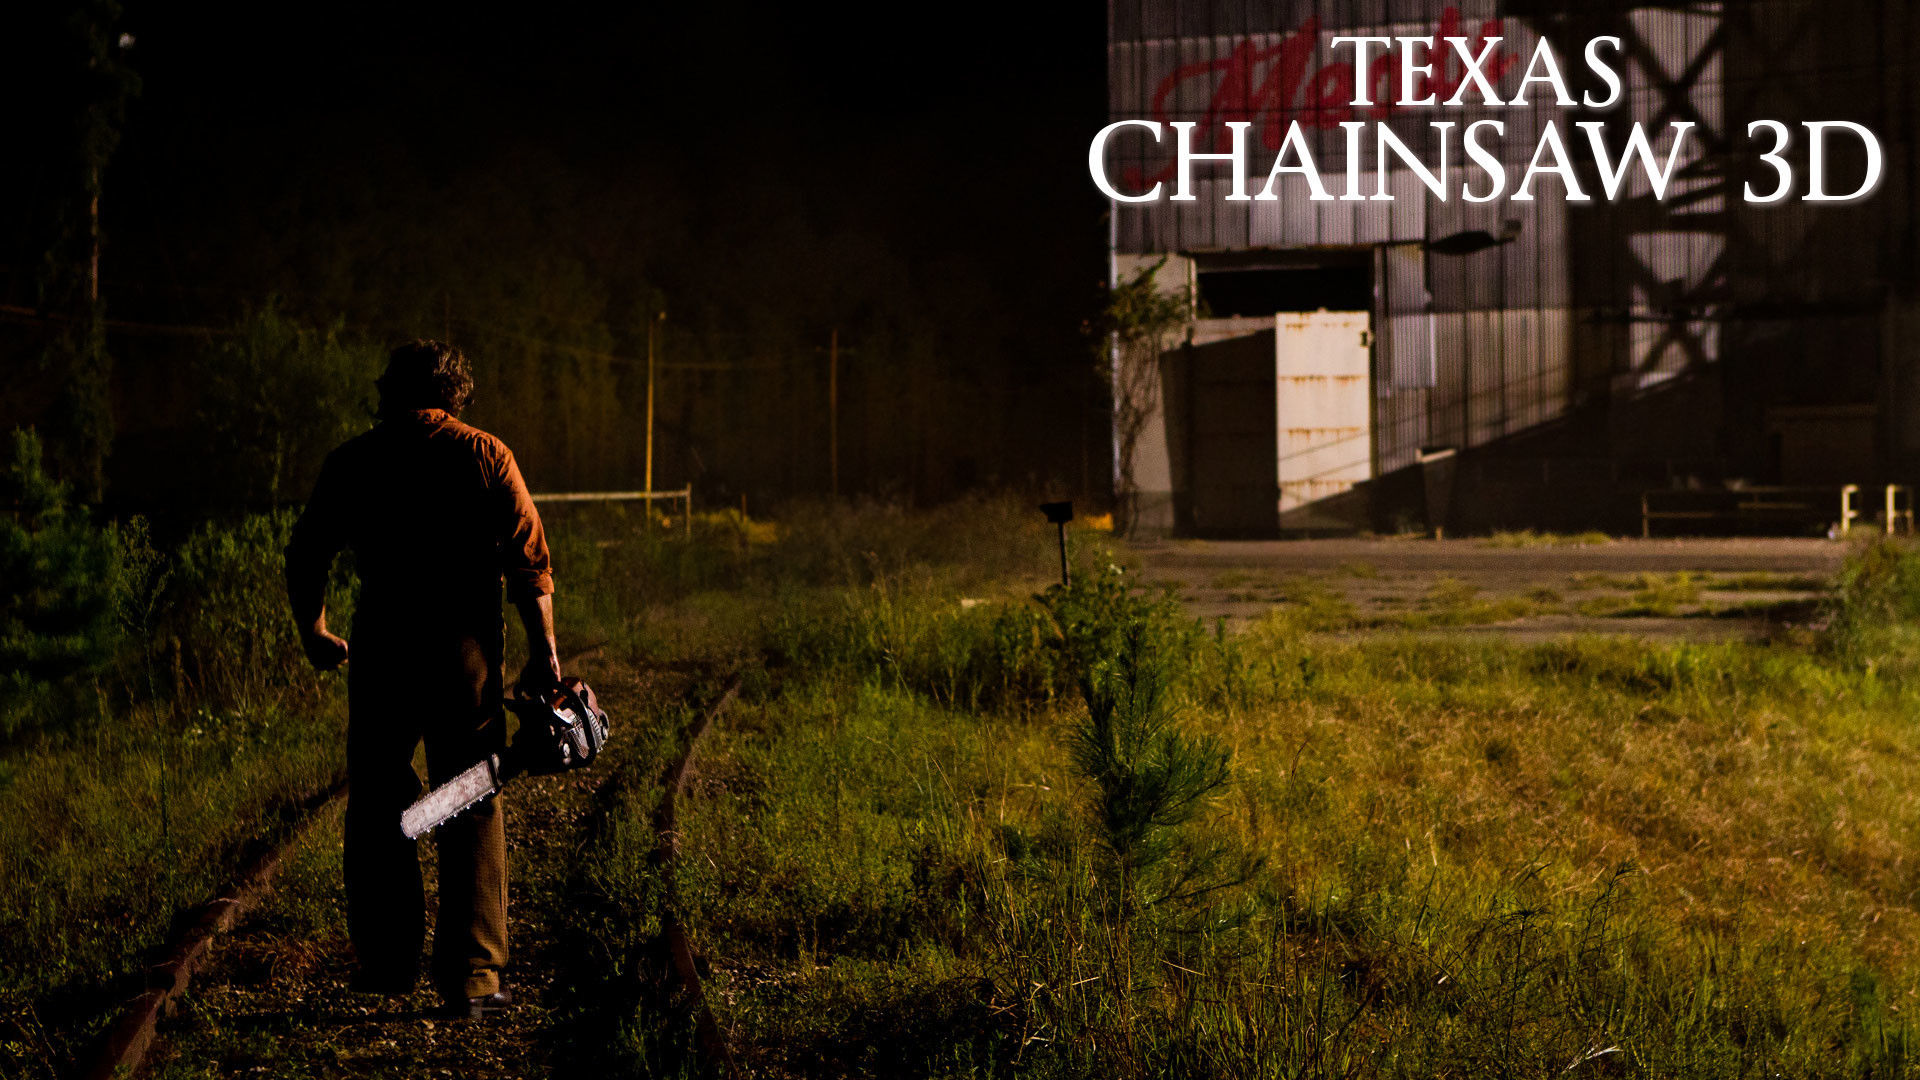 1920x1080 ... Texas Chainsaw Massacre 3D Wallpaper 2 by edheadkt